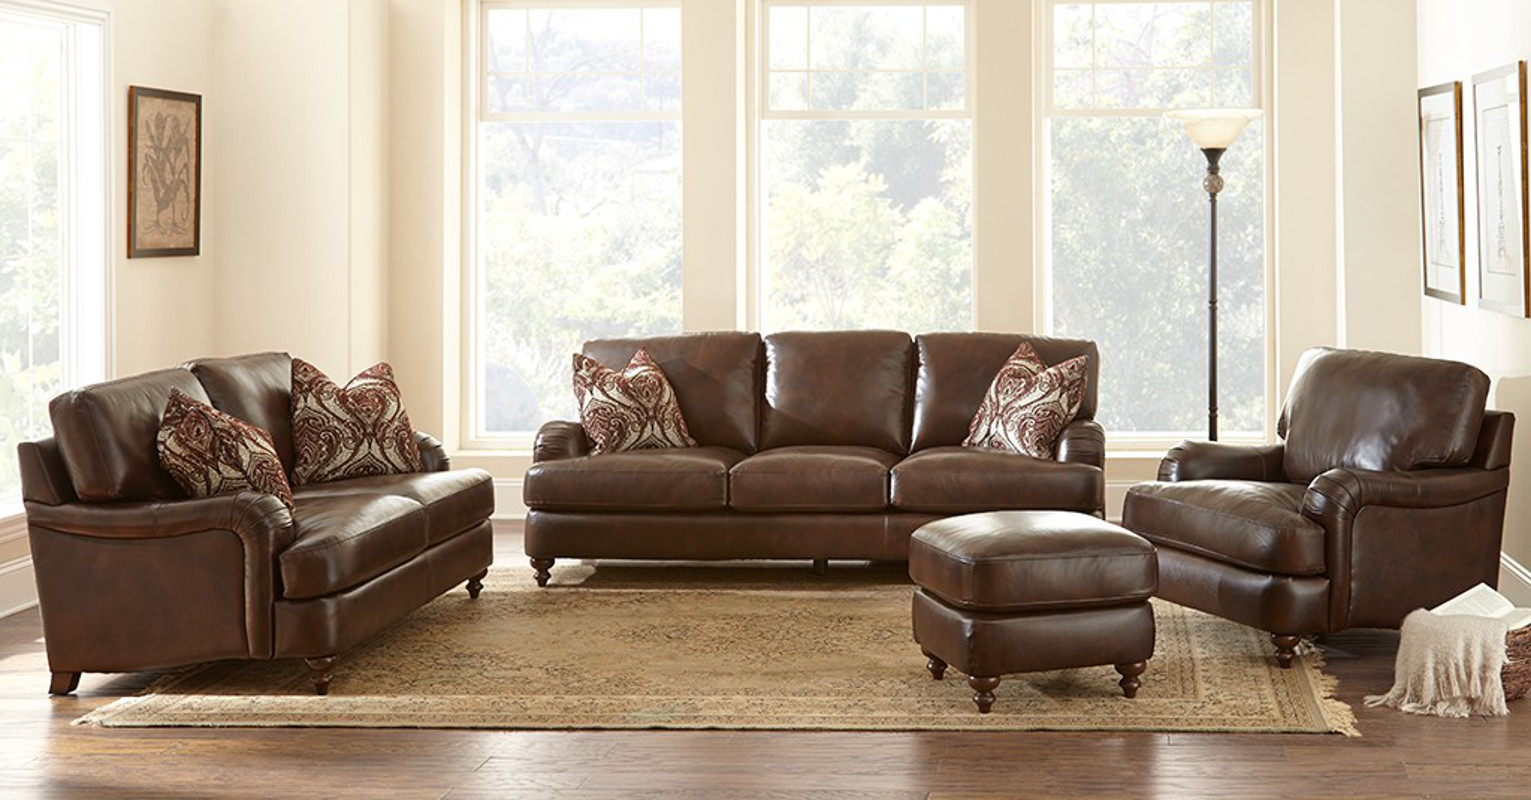 4 piece living room furniture sets